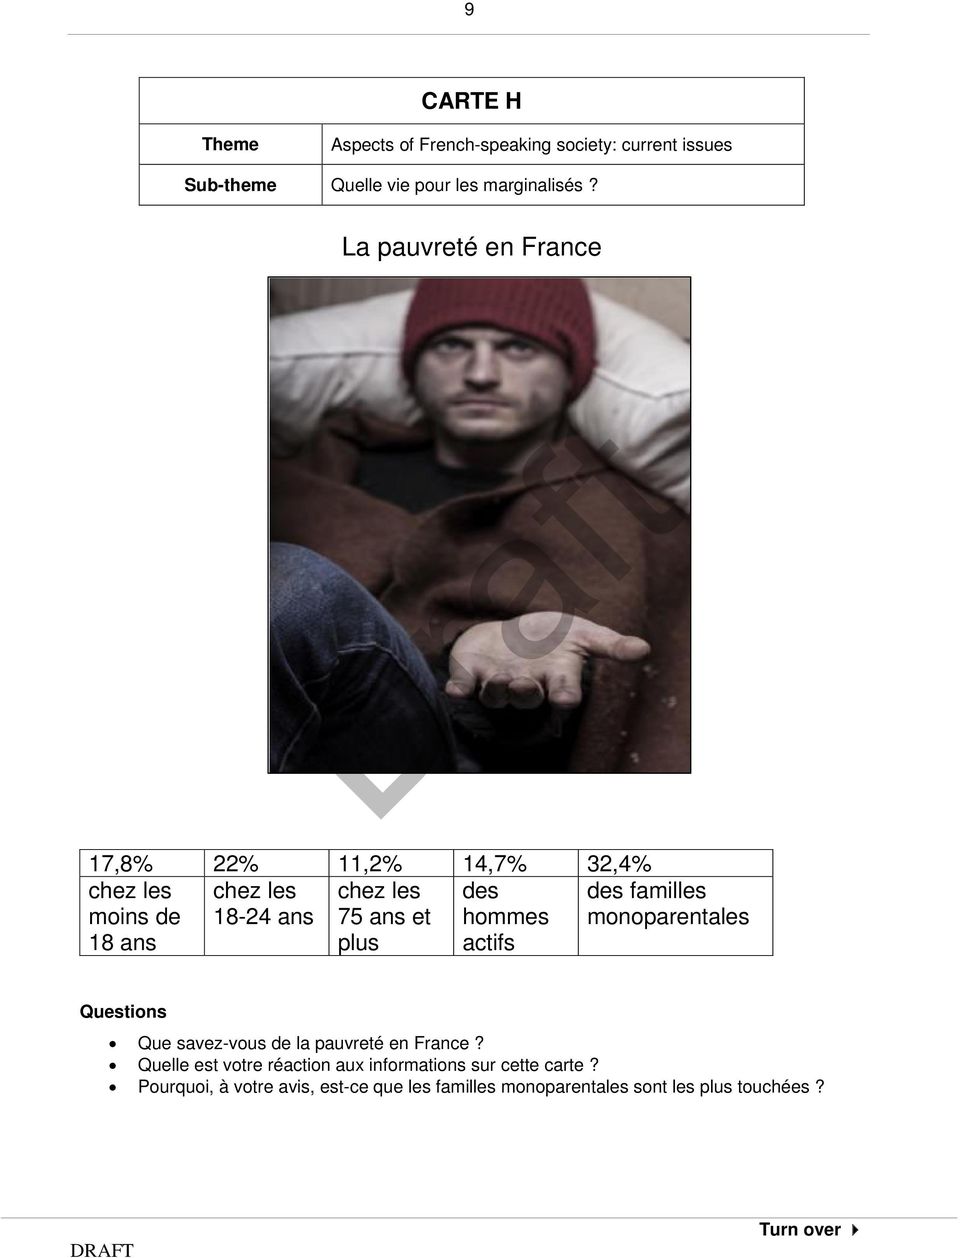 plus des hommes actifs des familles monoparentales Que savez-vous de la pauvreté en France?